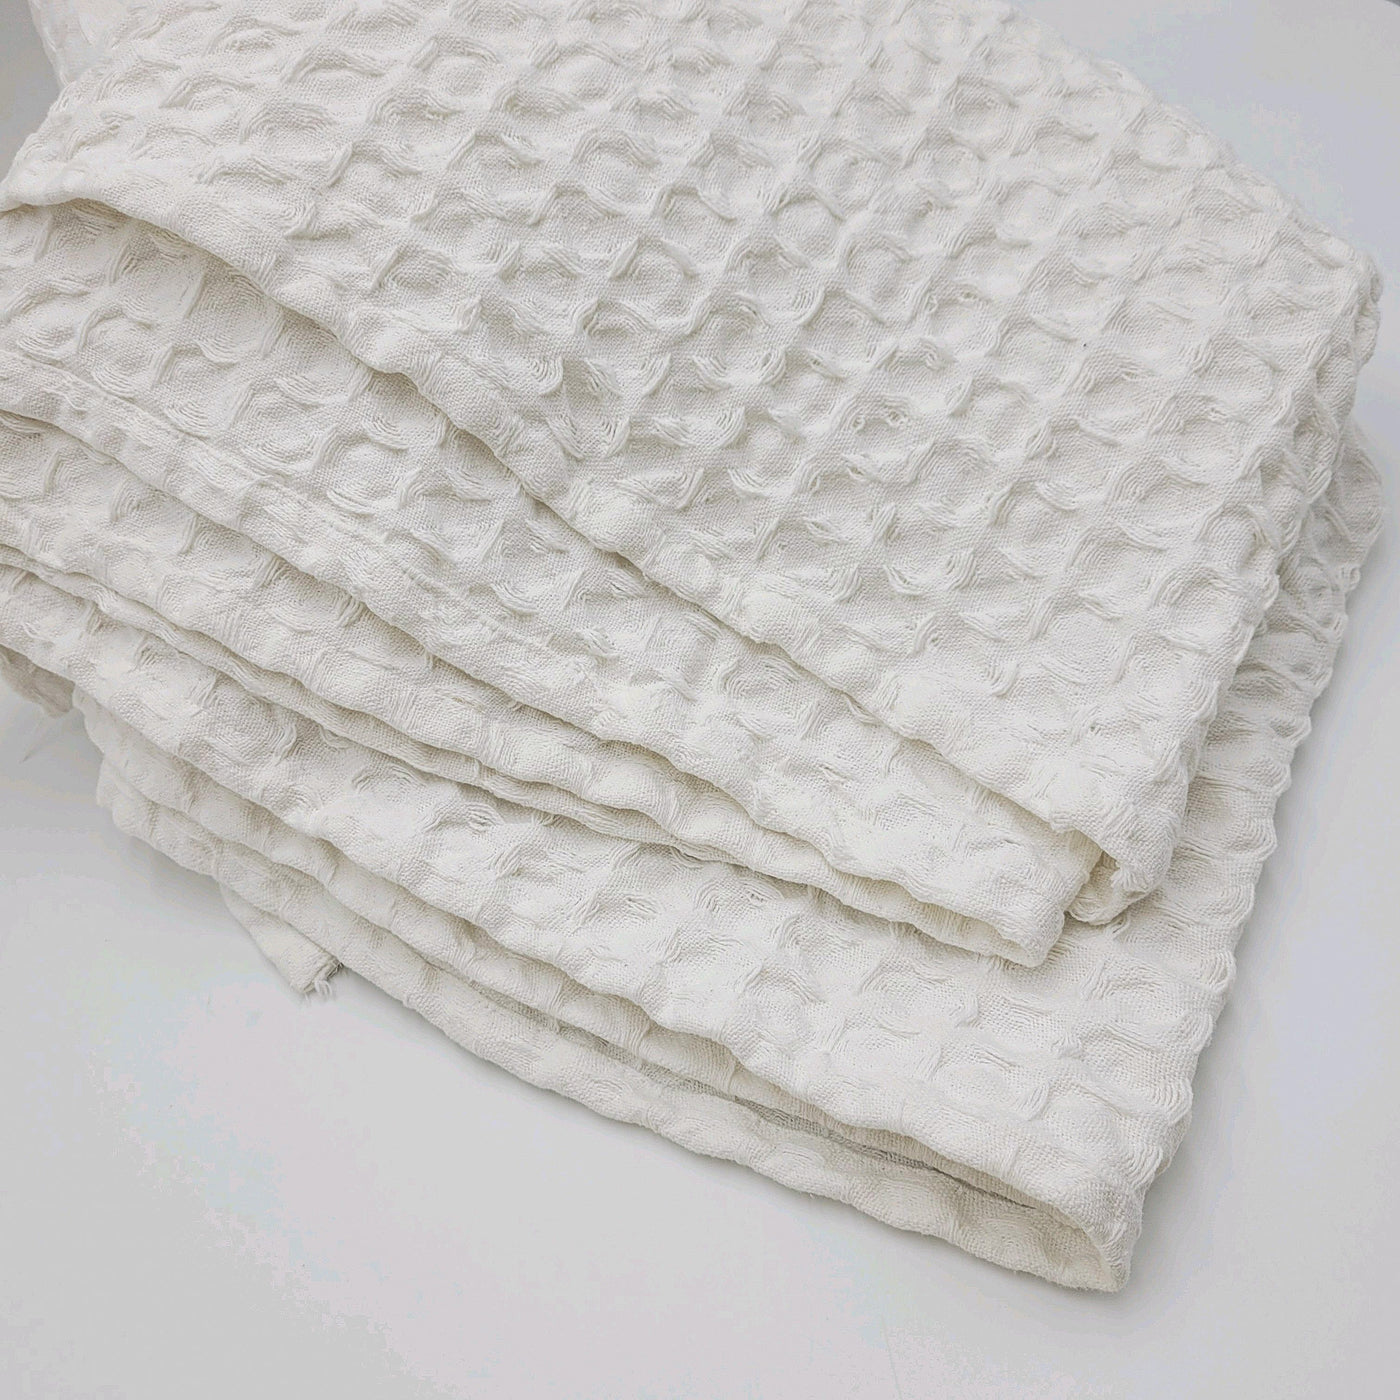 Textil Colchas Fibras naturales Blanco